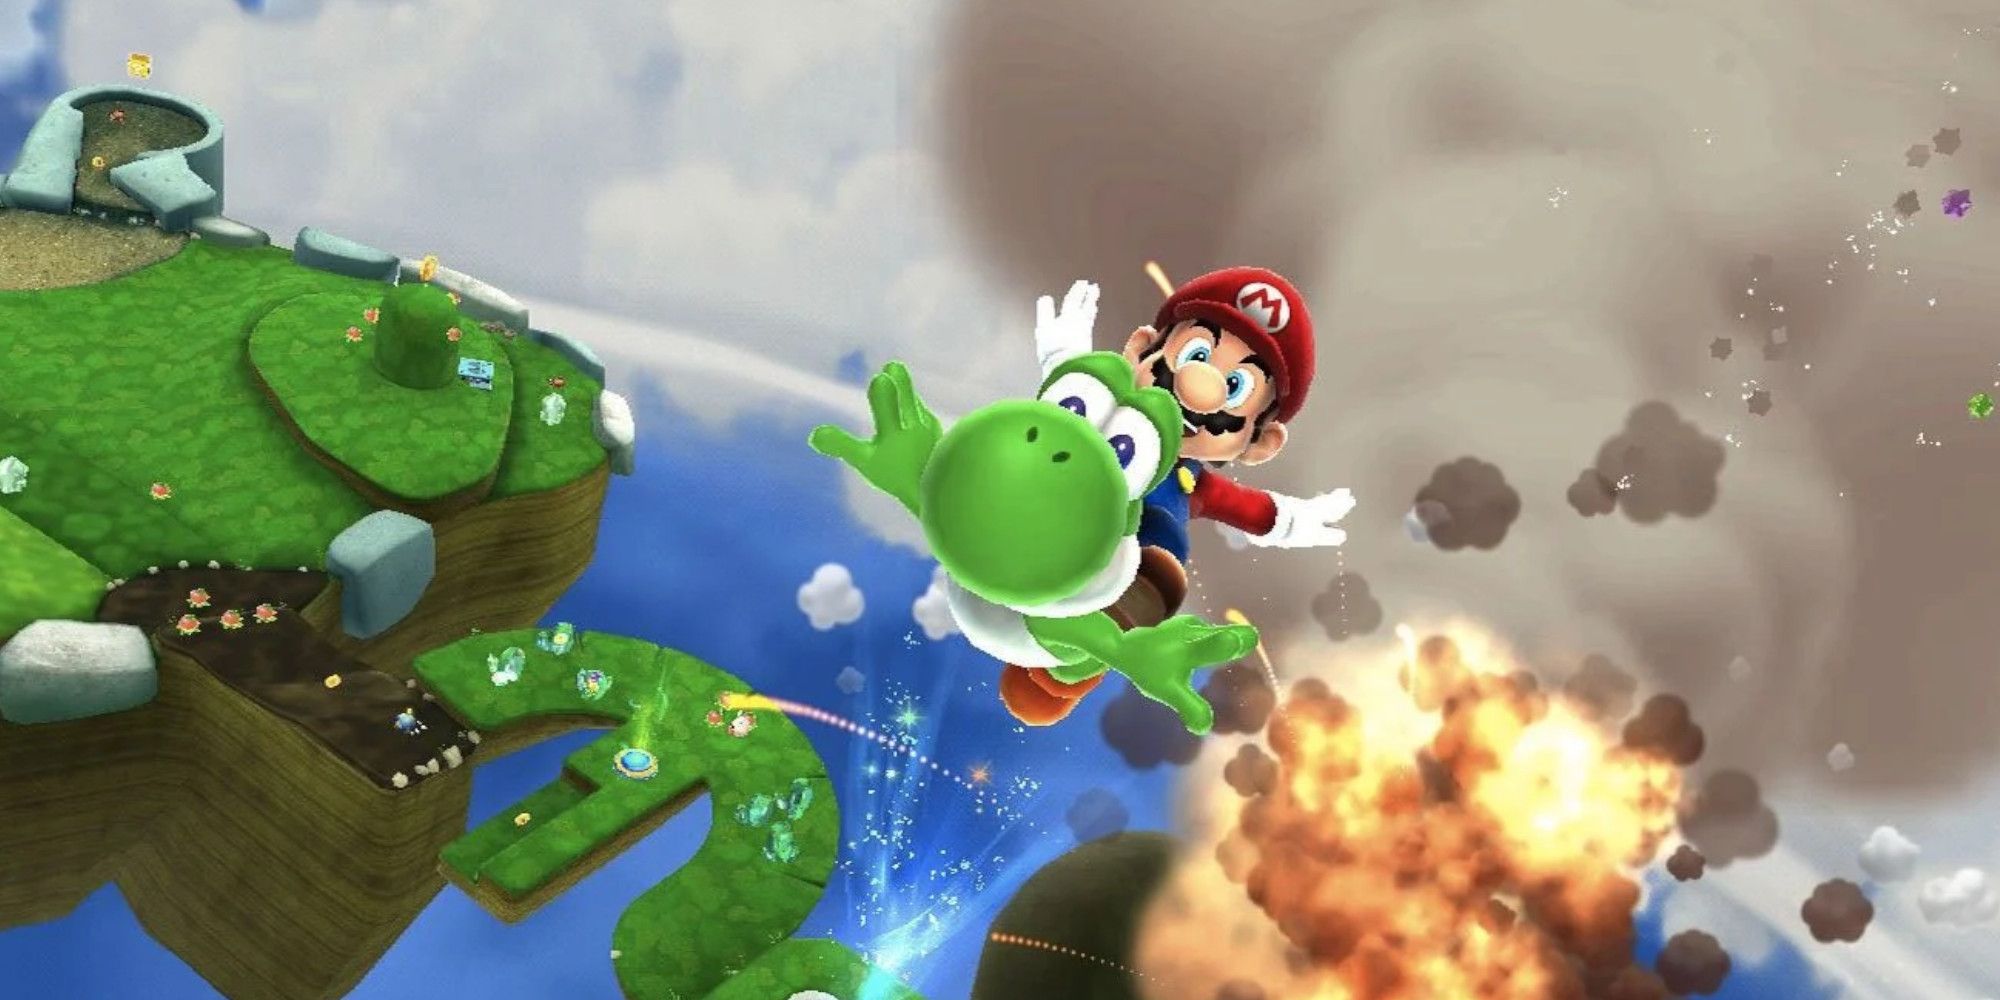 Mario and Yoshi in Super Mario Galaxy 2